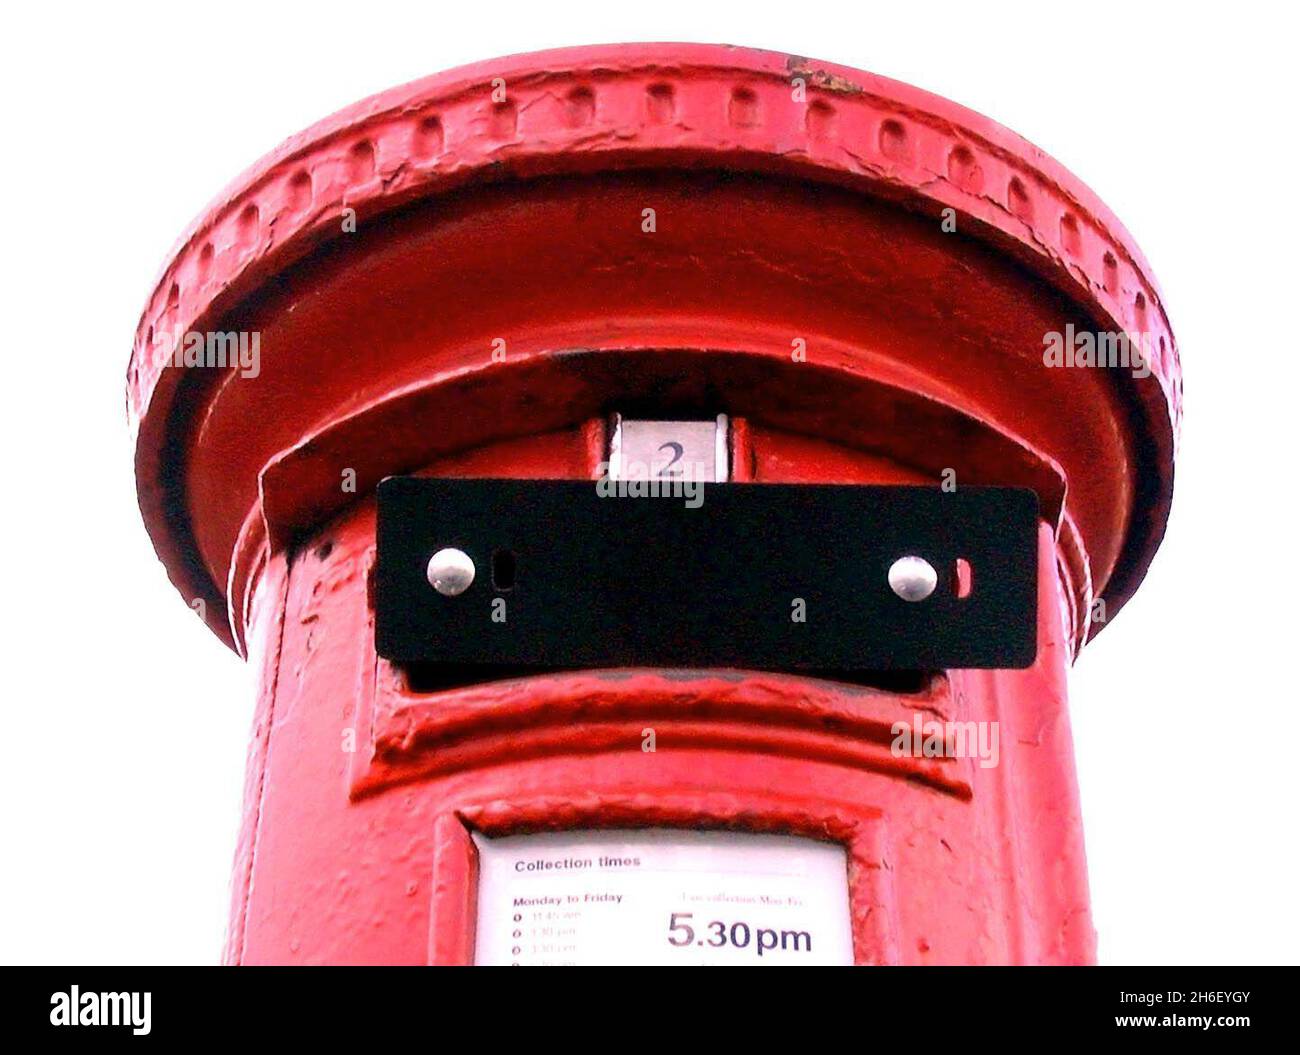 Ein geschlossener Postkasten. Bilddatum: Mittwoch, 18. Oktober 2006. Eine Petition mit vier Millionen Namen, die den Schutz der Postämter fordert, wird heute an die 10 Downing Street übermittelt. Stockfoto